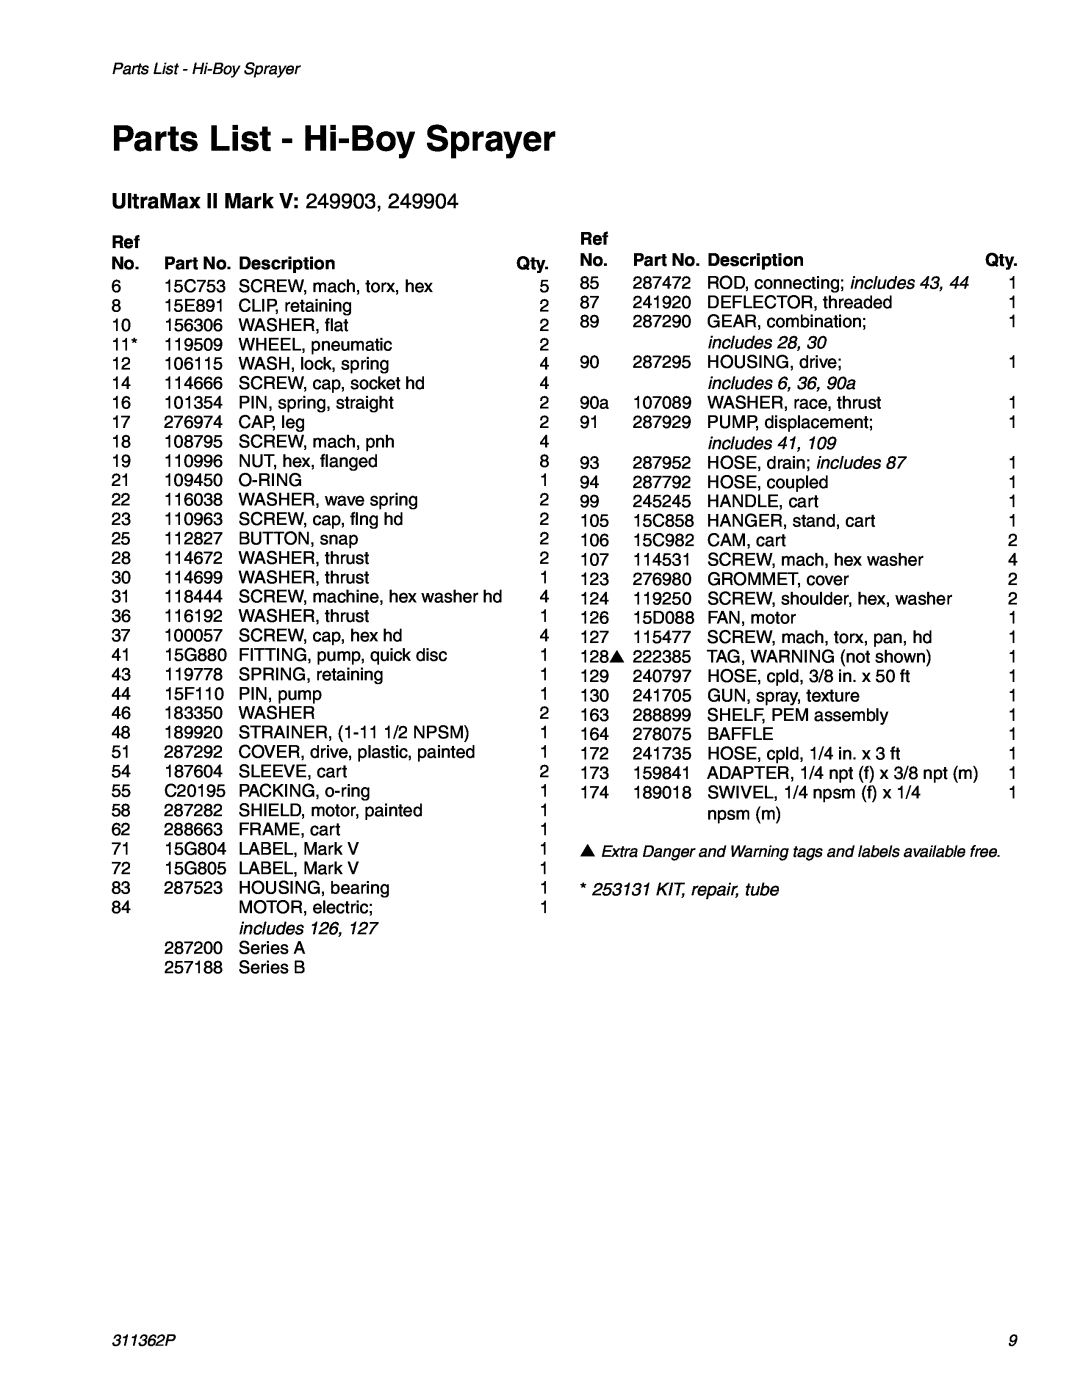 Graco Inc 1595, 1095 manual Parts List - Hi-Boy Sprayer, UltraMax II Mark V 249903, Part No. Description 